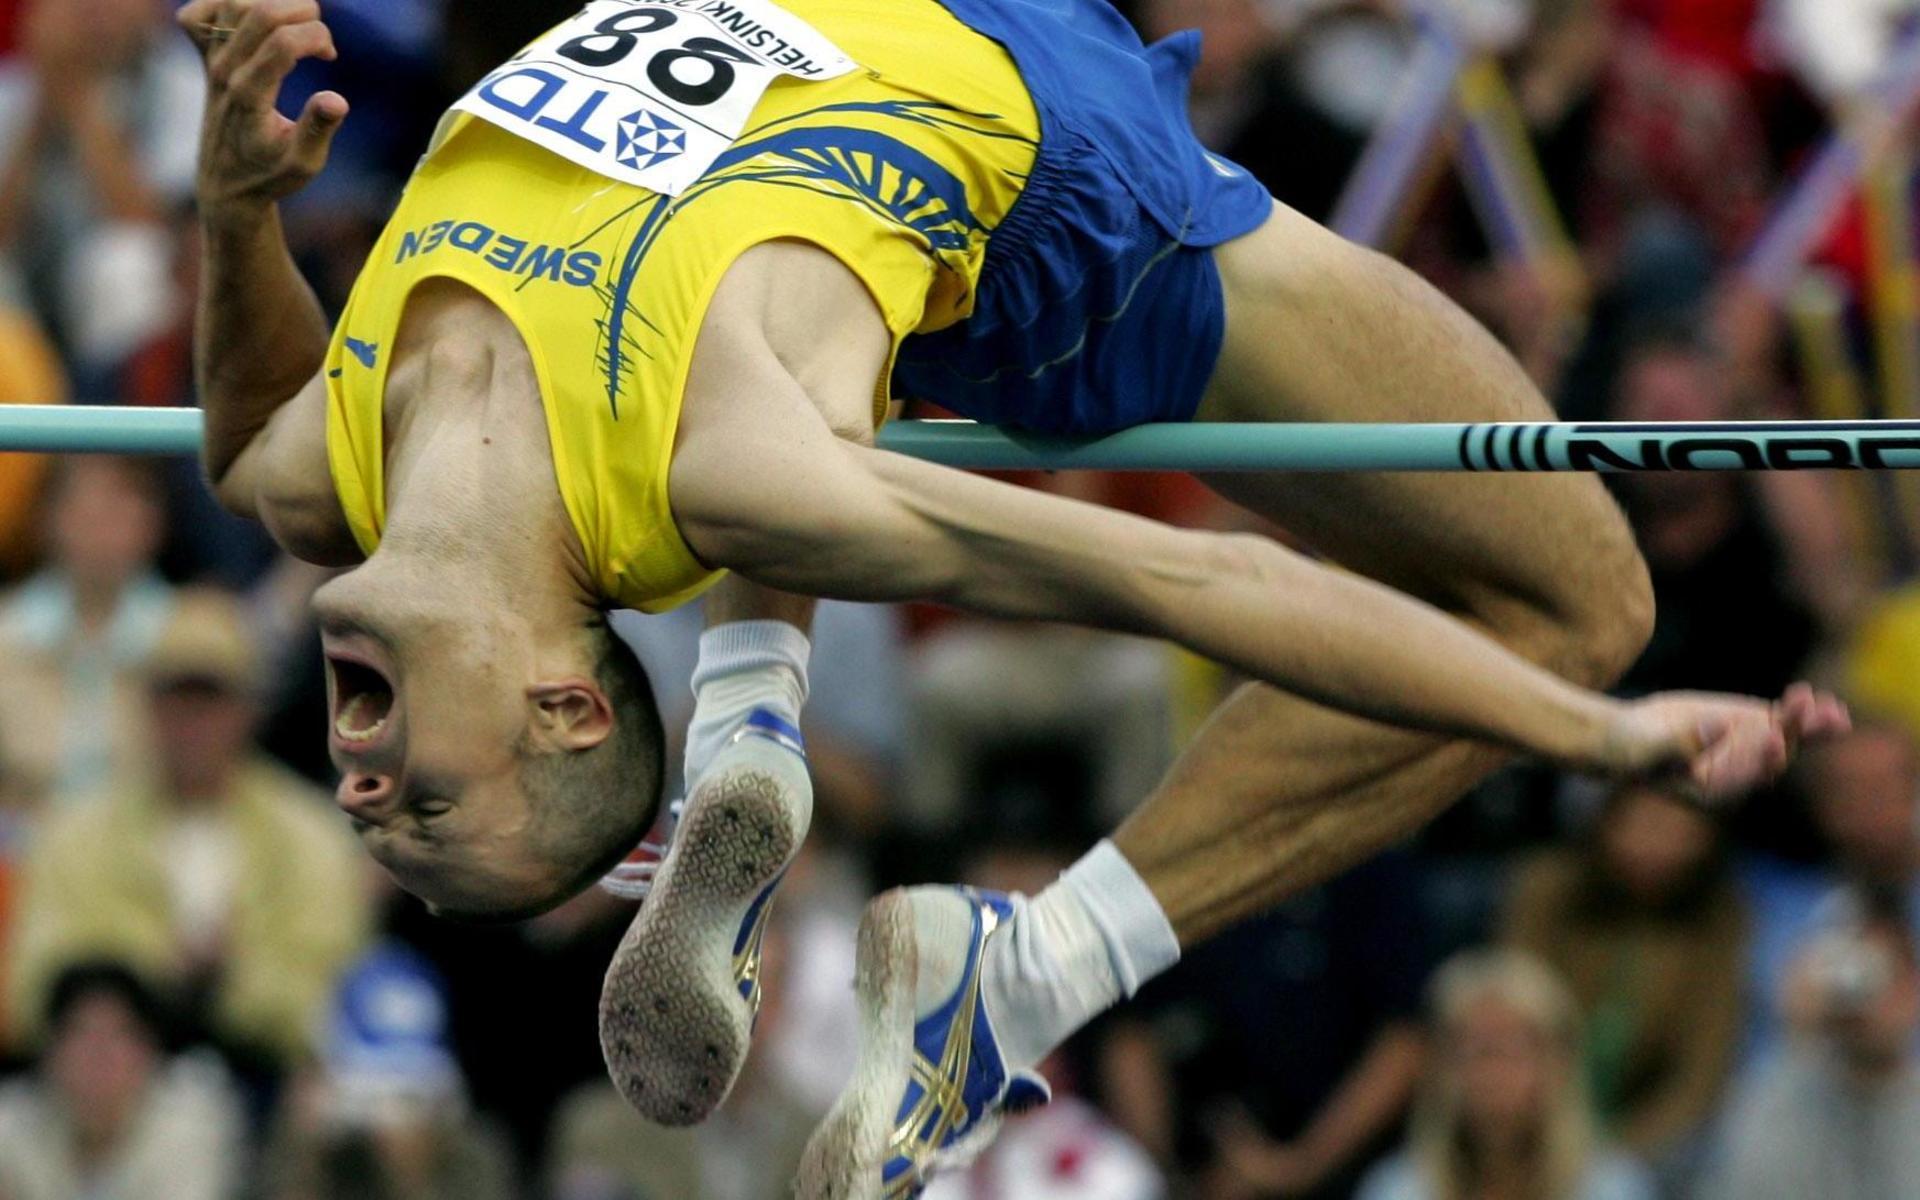 Höjdhopparen är en av Sveriges bästa friidrottare genom tiderna, med ett OS-guld från Aten som en av hans främsta meriter. 